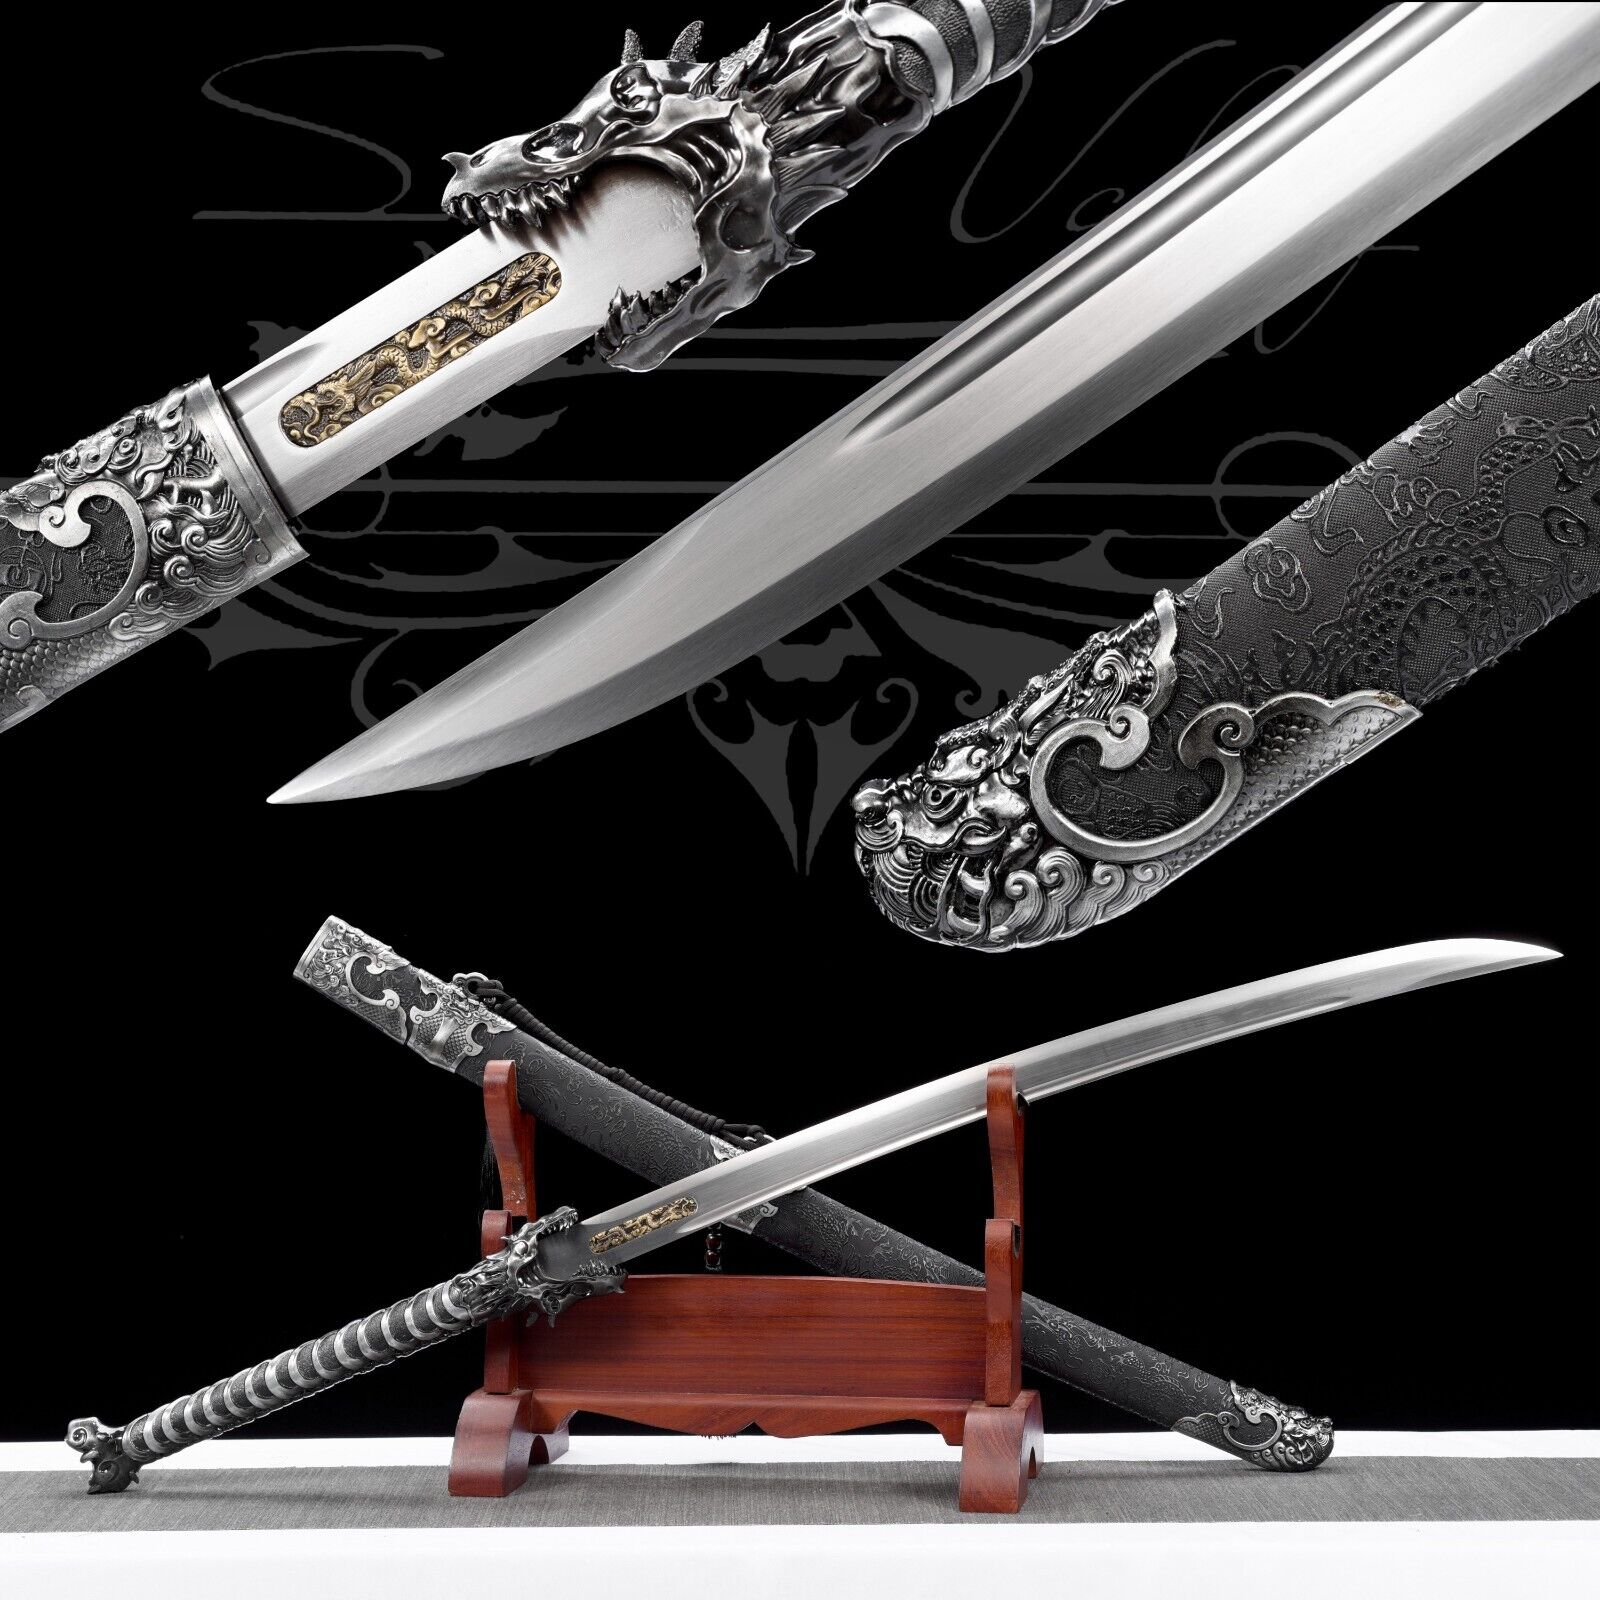 Handmade Katana/Manganese steel/Sword/Full Tang/Real/Collectible/Sharpened